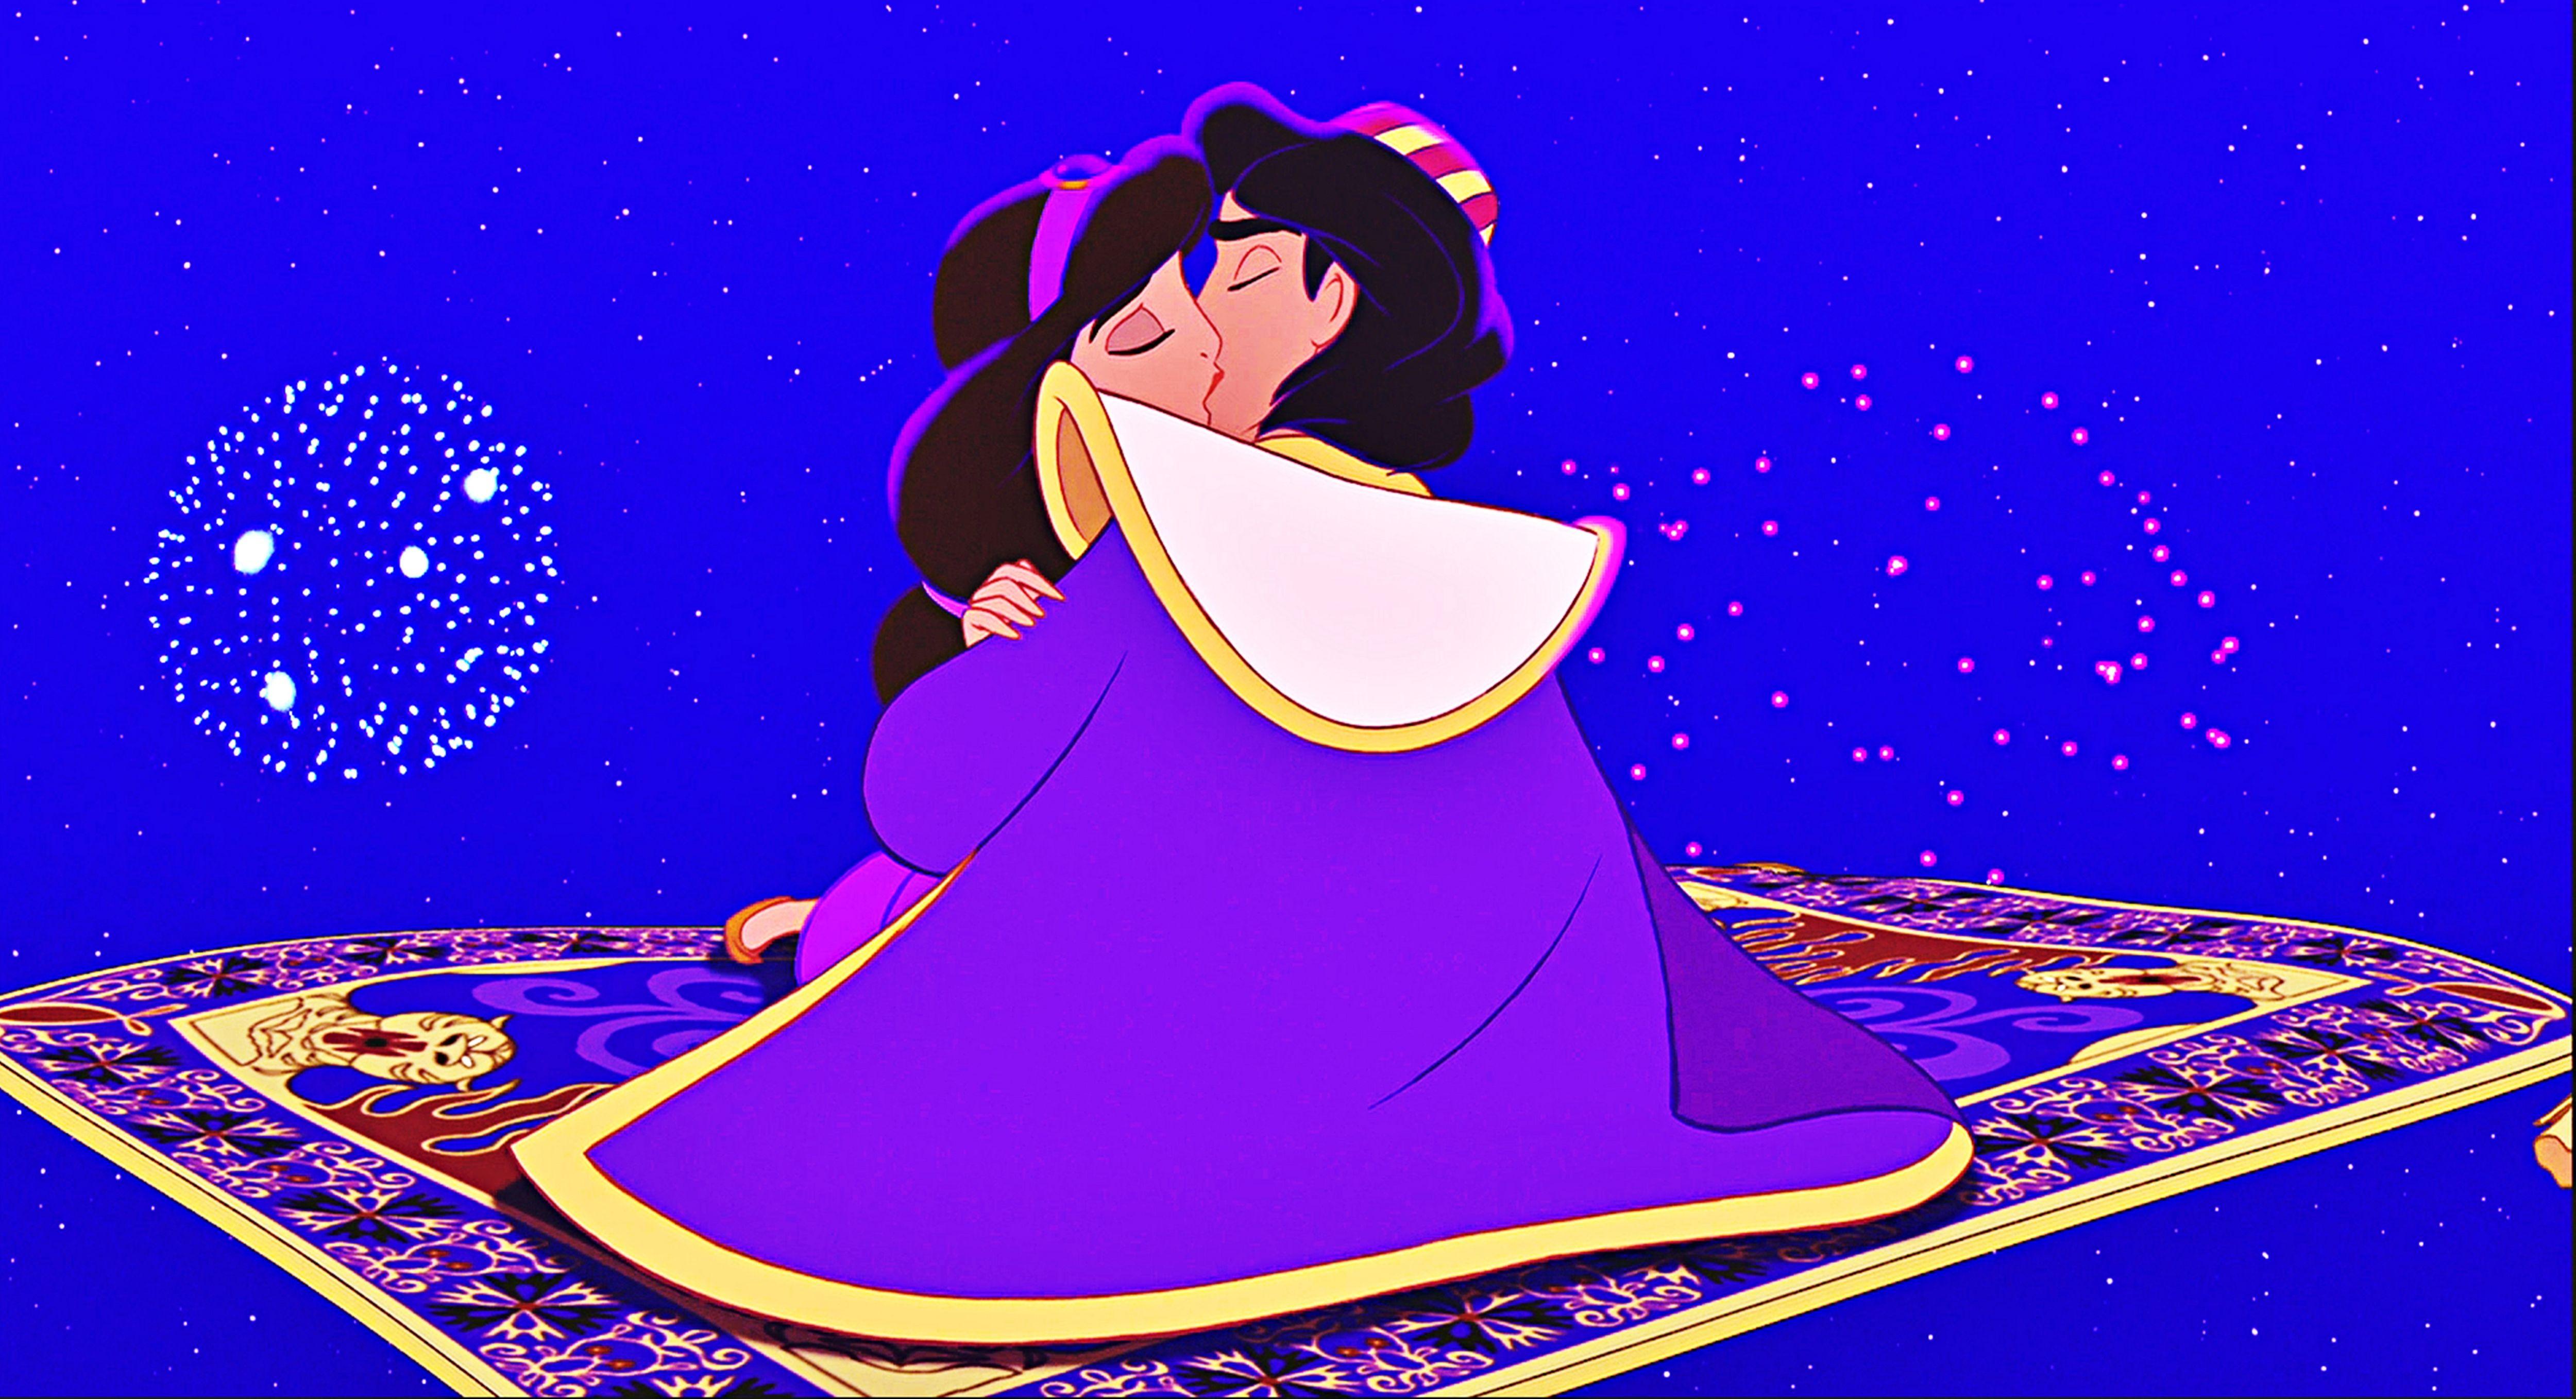 walt disney screencaps carpet princess jasmine aladdin image